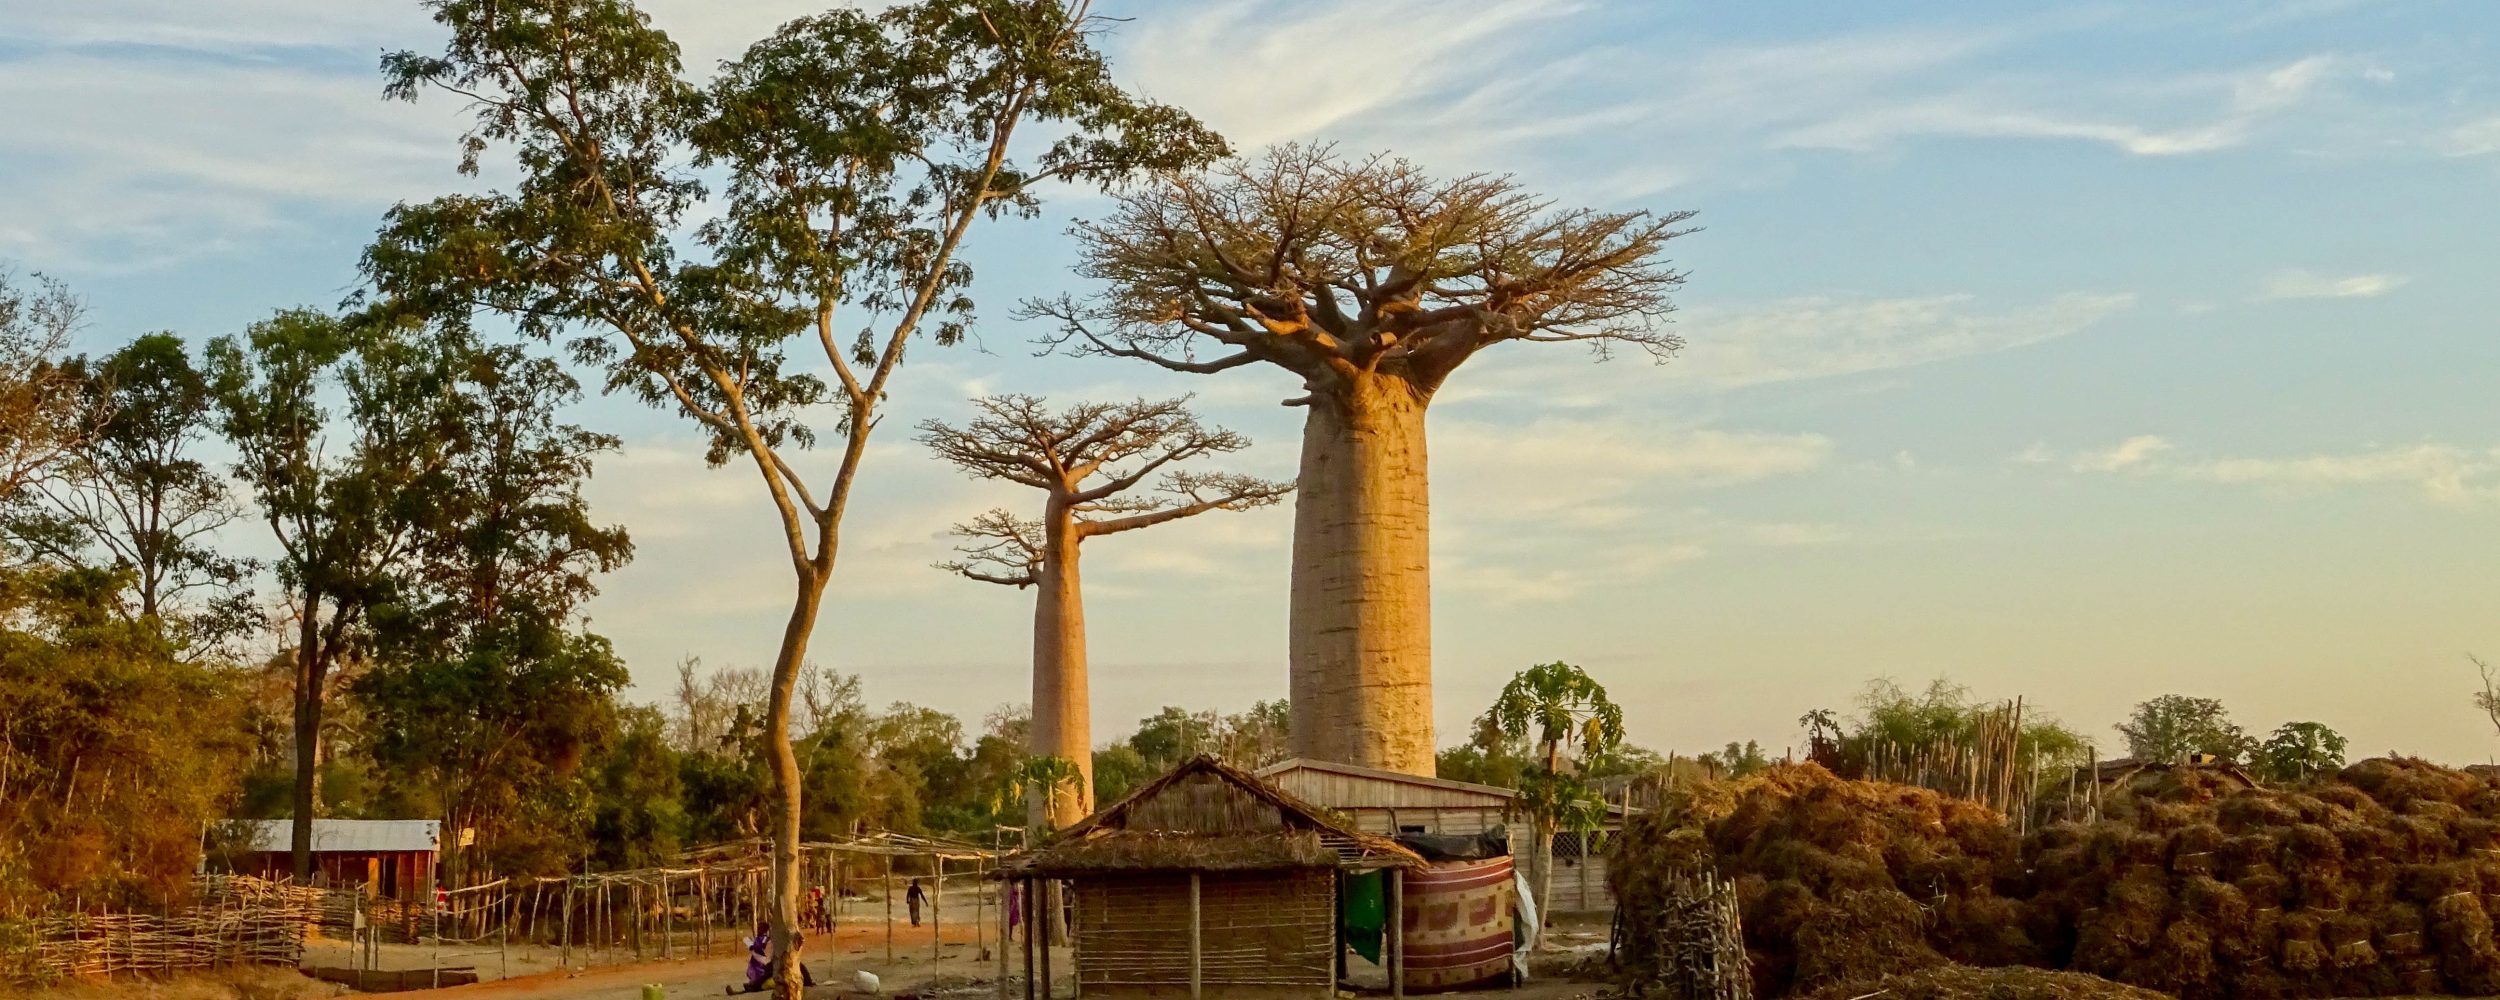 Baobabs-in-Kirindy-Village